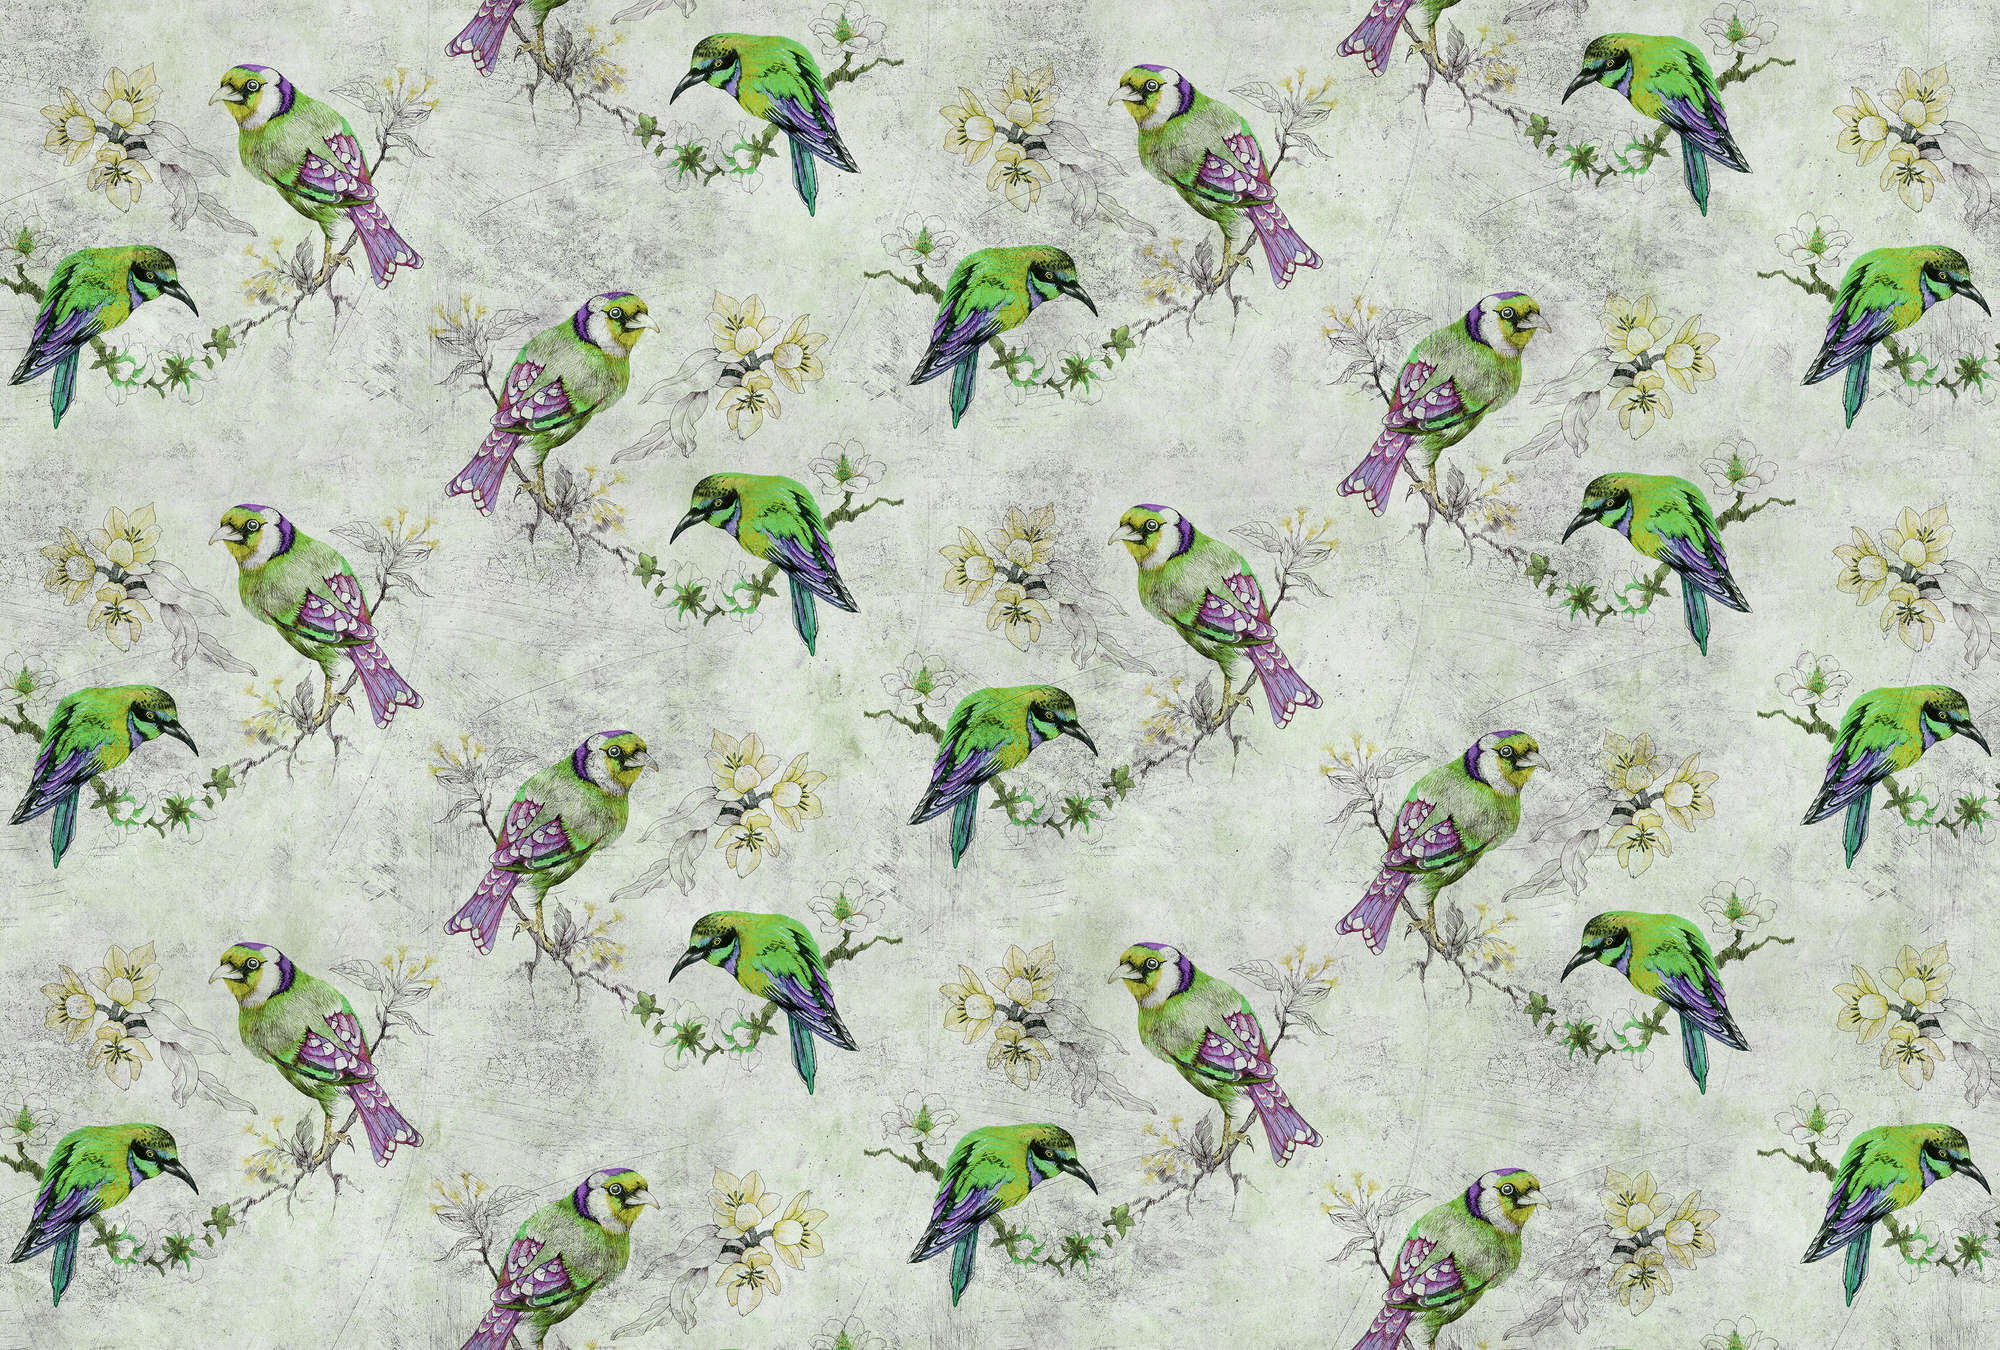             Love birds 2 - Bont fotobehang in krasstructuur met geschetste vogels - Grijs, Groen | Premium smooth fleece
        